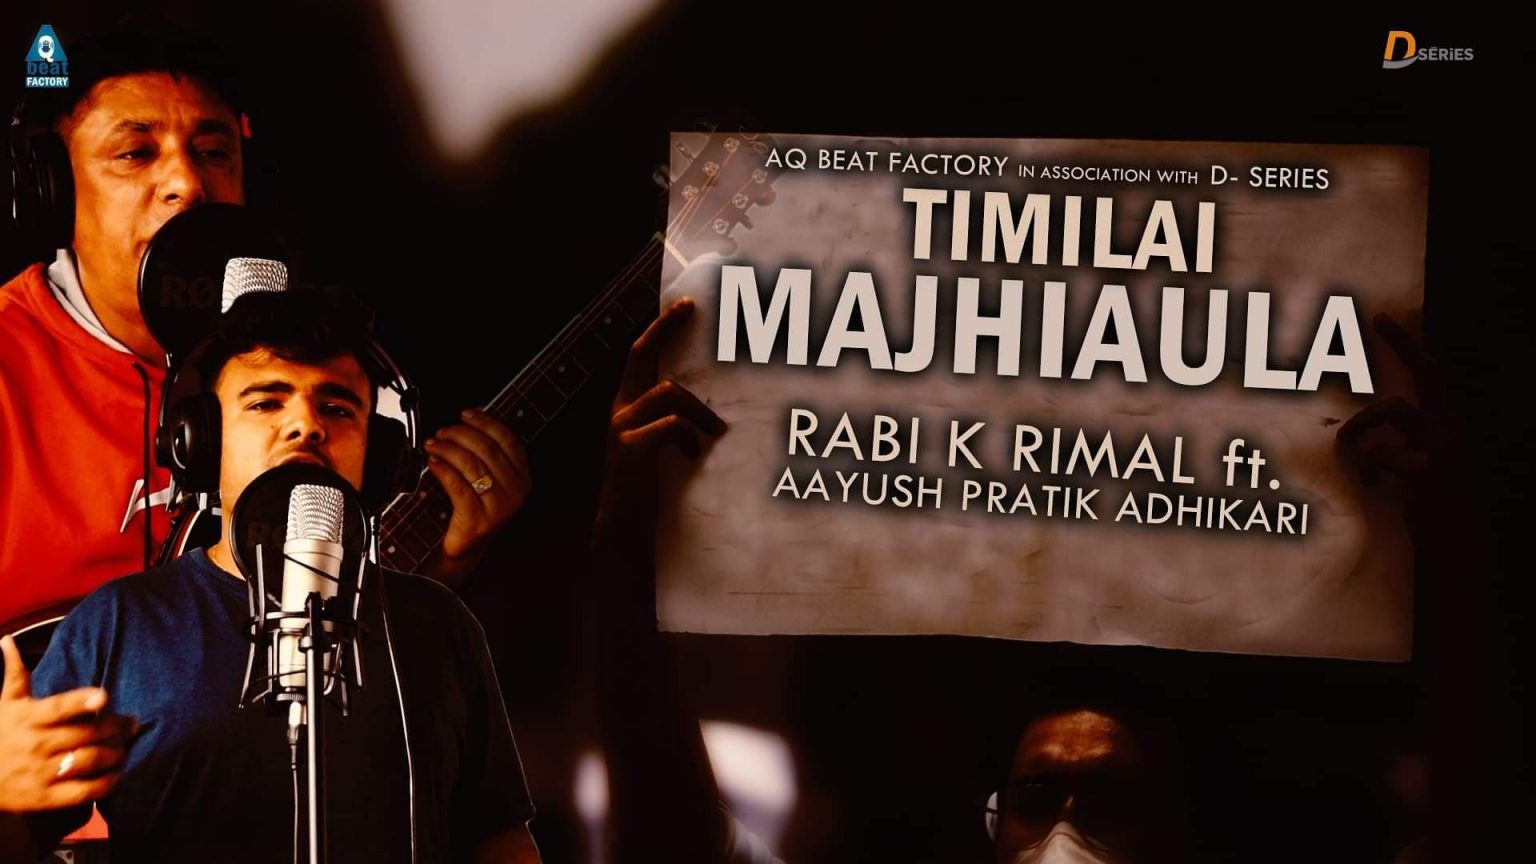 गायक रवि रिमालले भ्रष्ट्राचारी नेताहरुलाई देखाए माझी औंला(भिडियो)